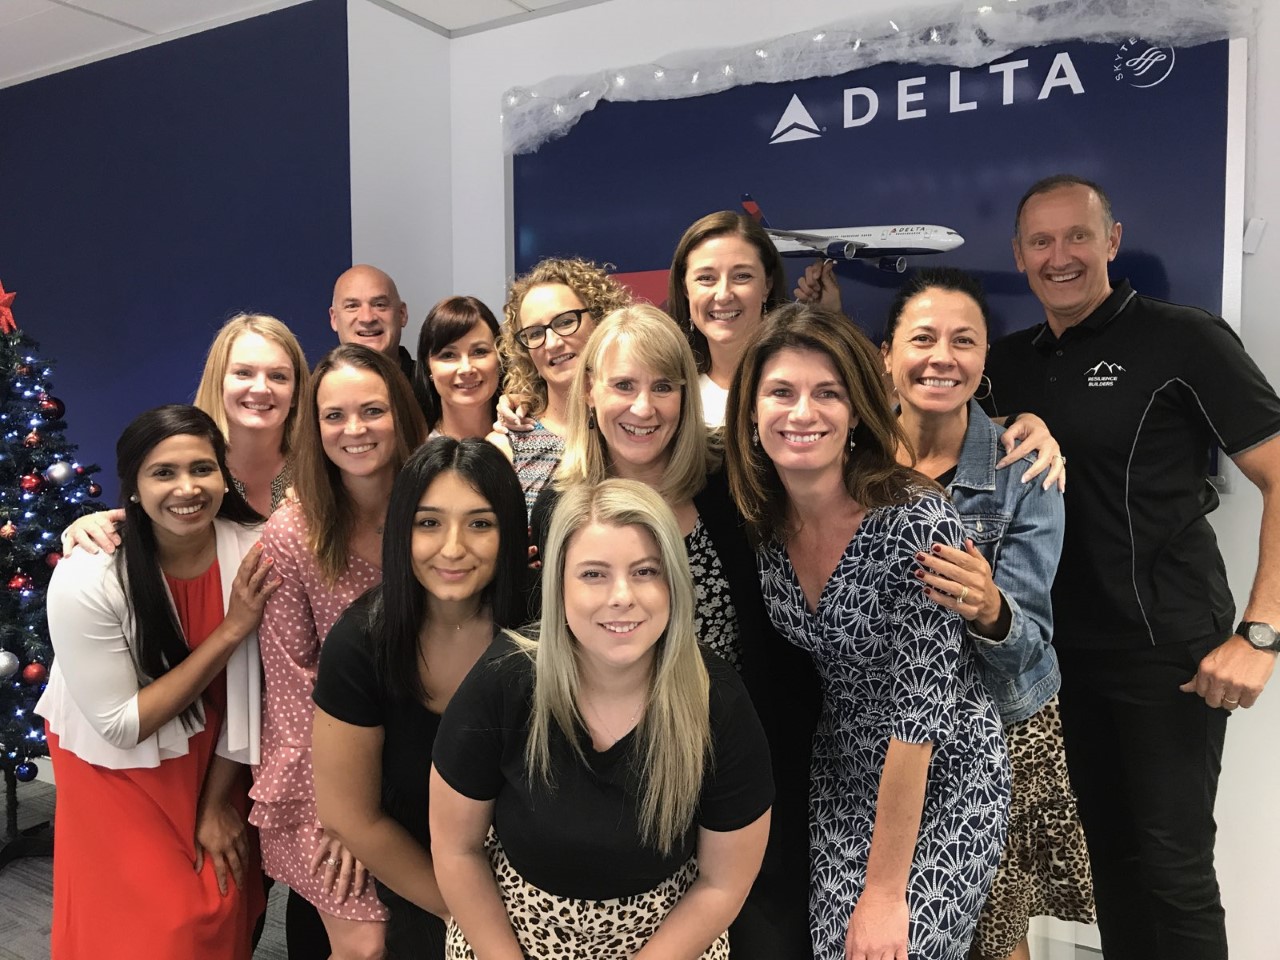 Delta airlines staff